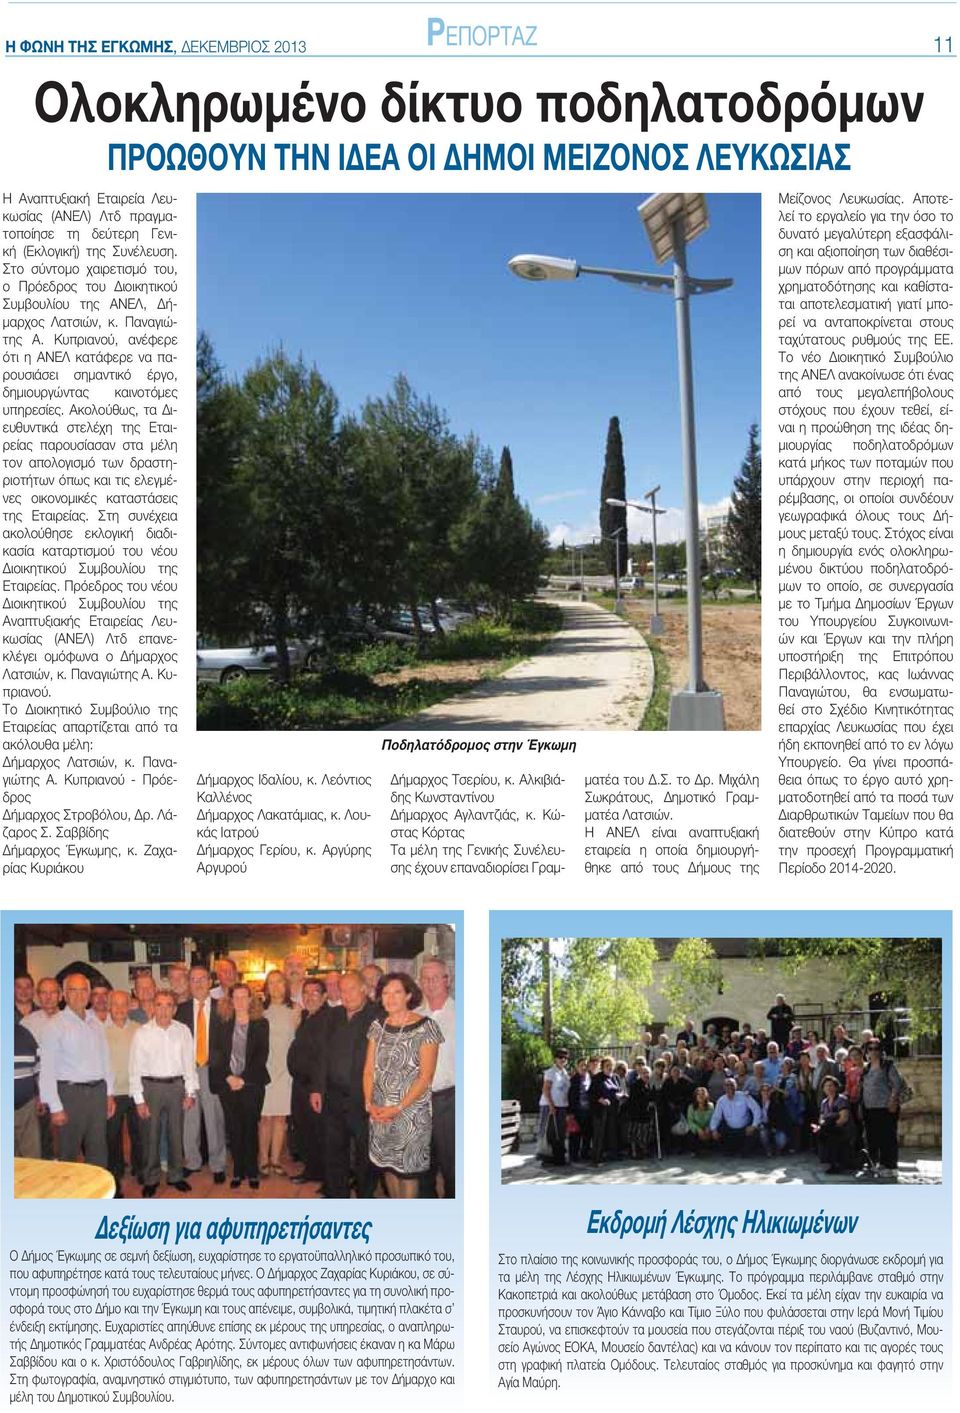 Κυπριανού, ανέφερε ότι η ΑΝΕΛ κατάφερε να παρουσιάσει σημαντικό έργο, δημιουργώντας καινοτόμες υπηρεσίες.